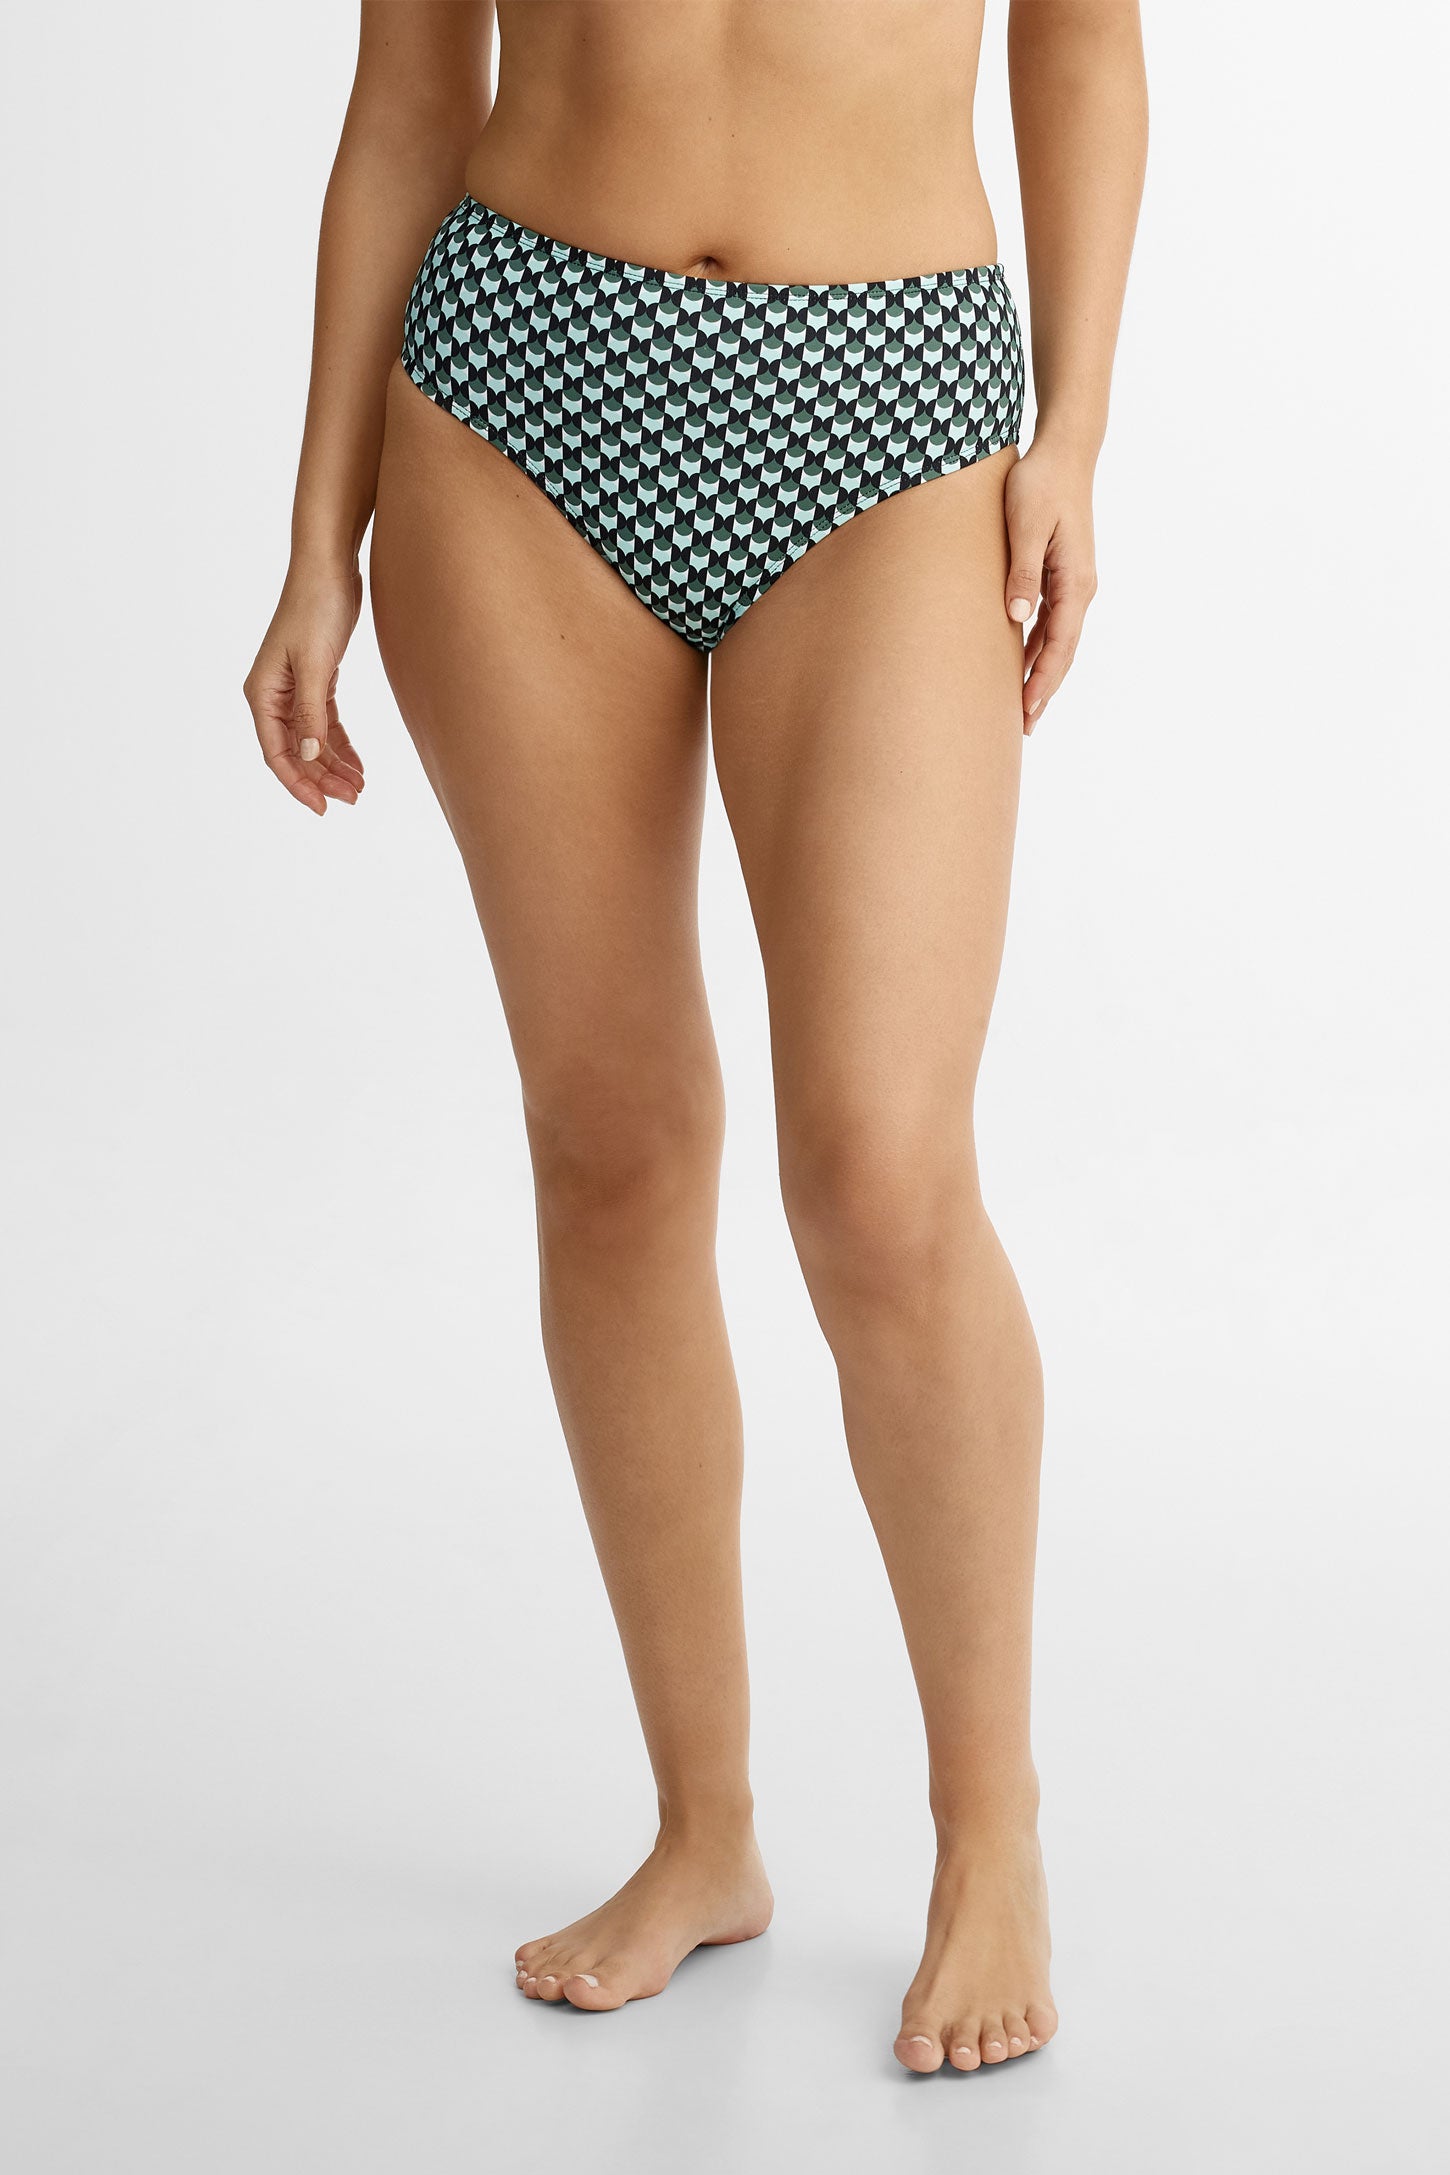 Culotte maillot de bain Bikini taille haute, 2/40$ - Femme && VERT/MULTI